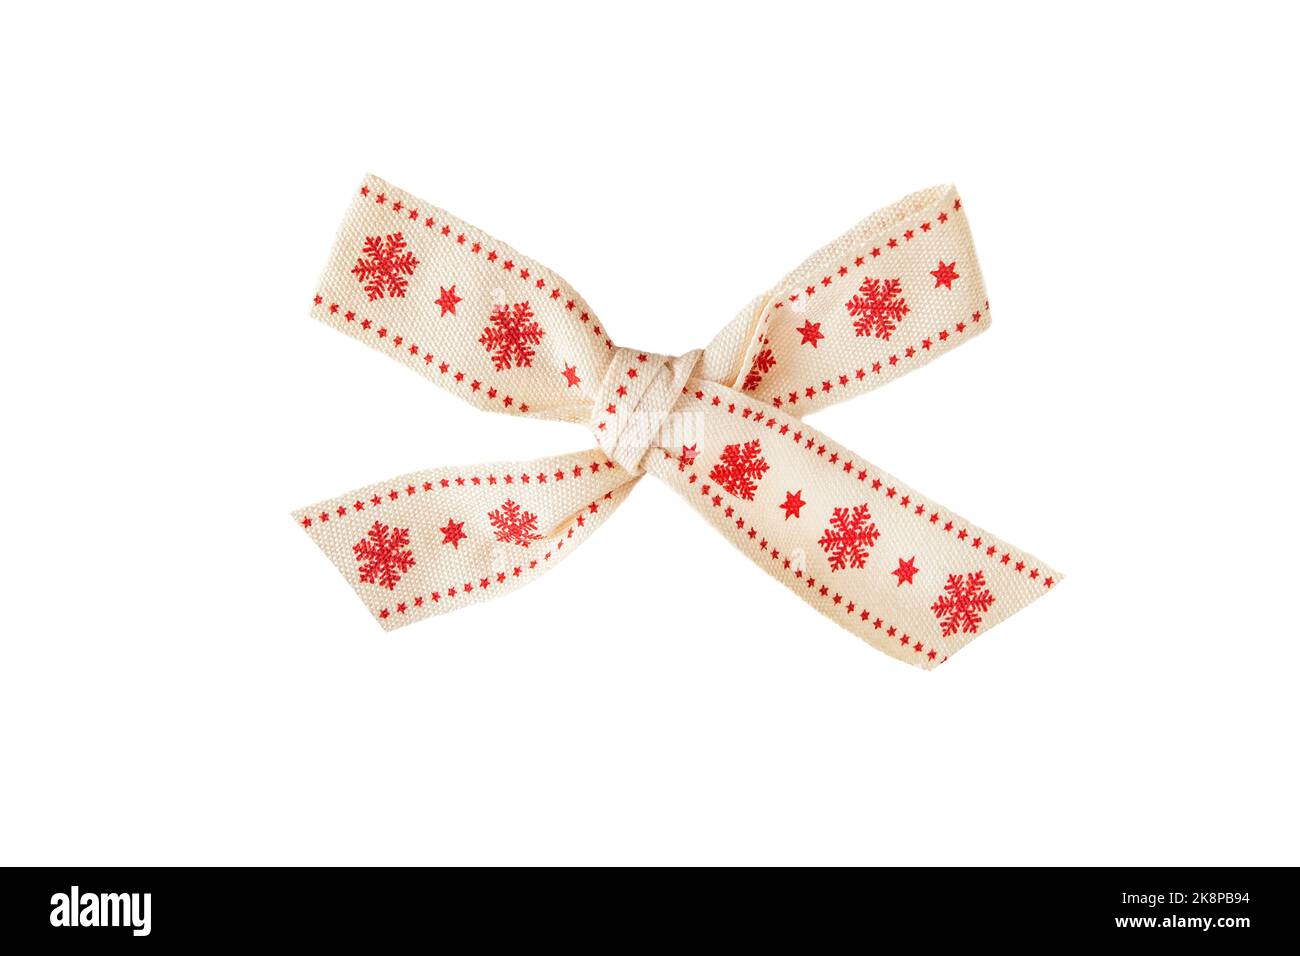 Noeud de Noël avec flocons de neige rouges isolés sur fond blanc Banque D'Images